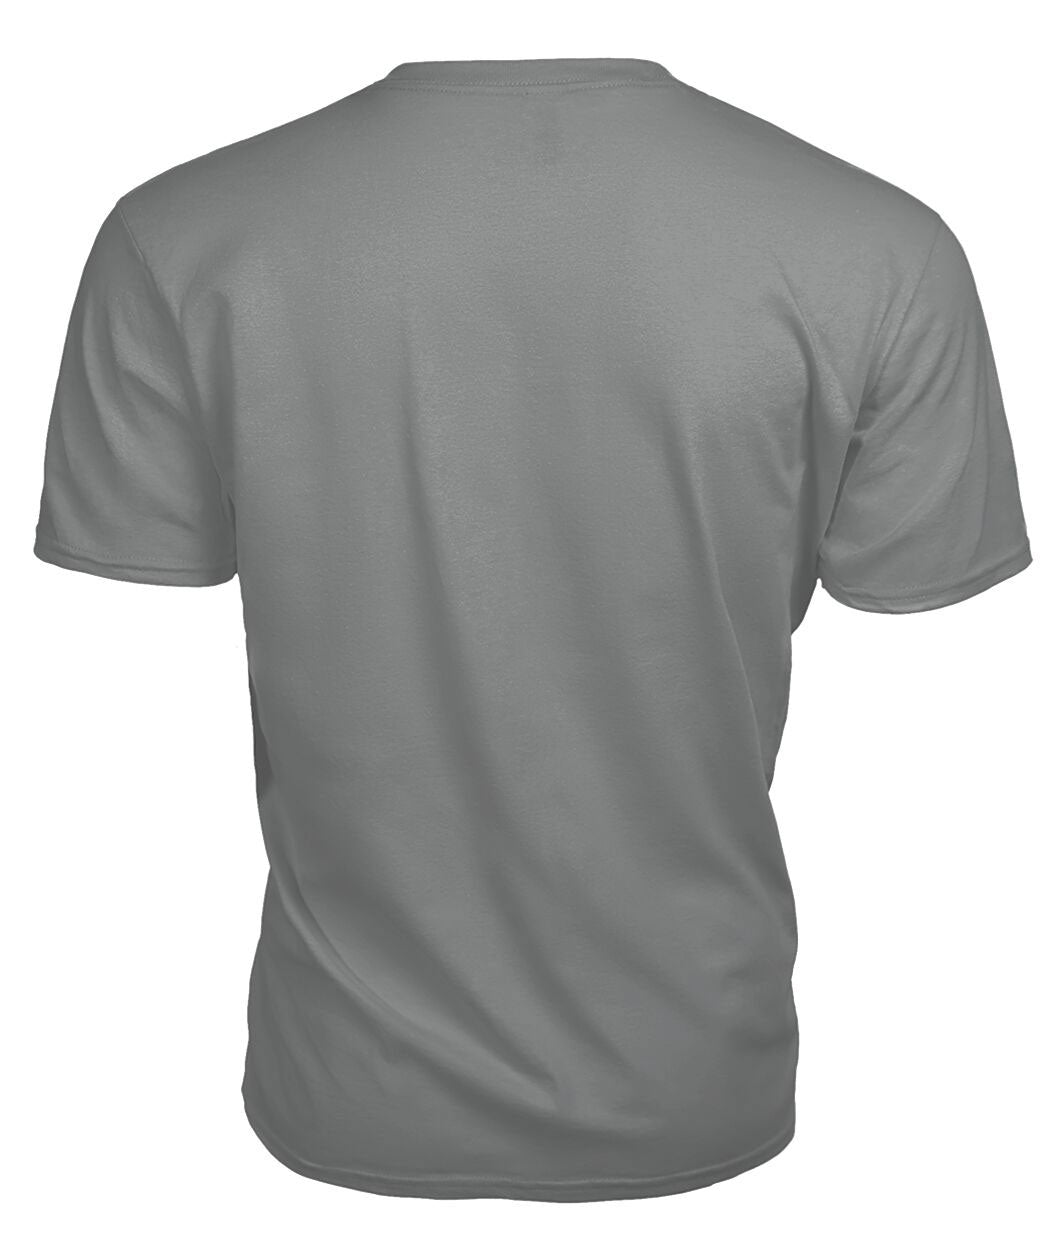 Maxtone Tartan Crest 2D T-shirt - Blood Runs Through My Veins Style